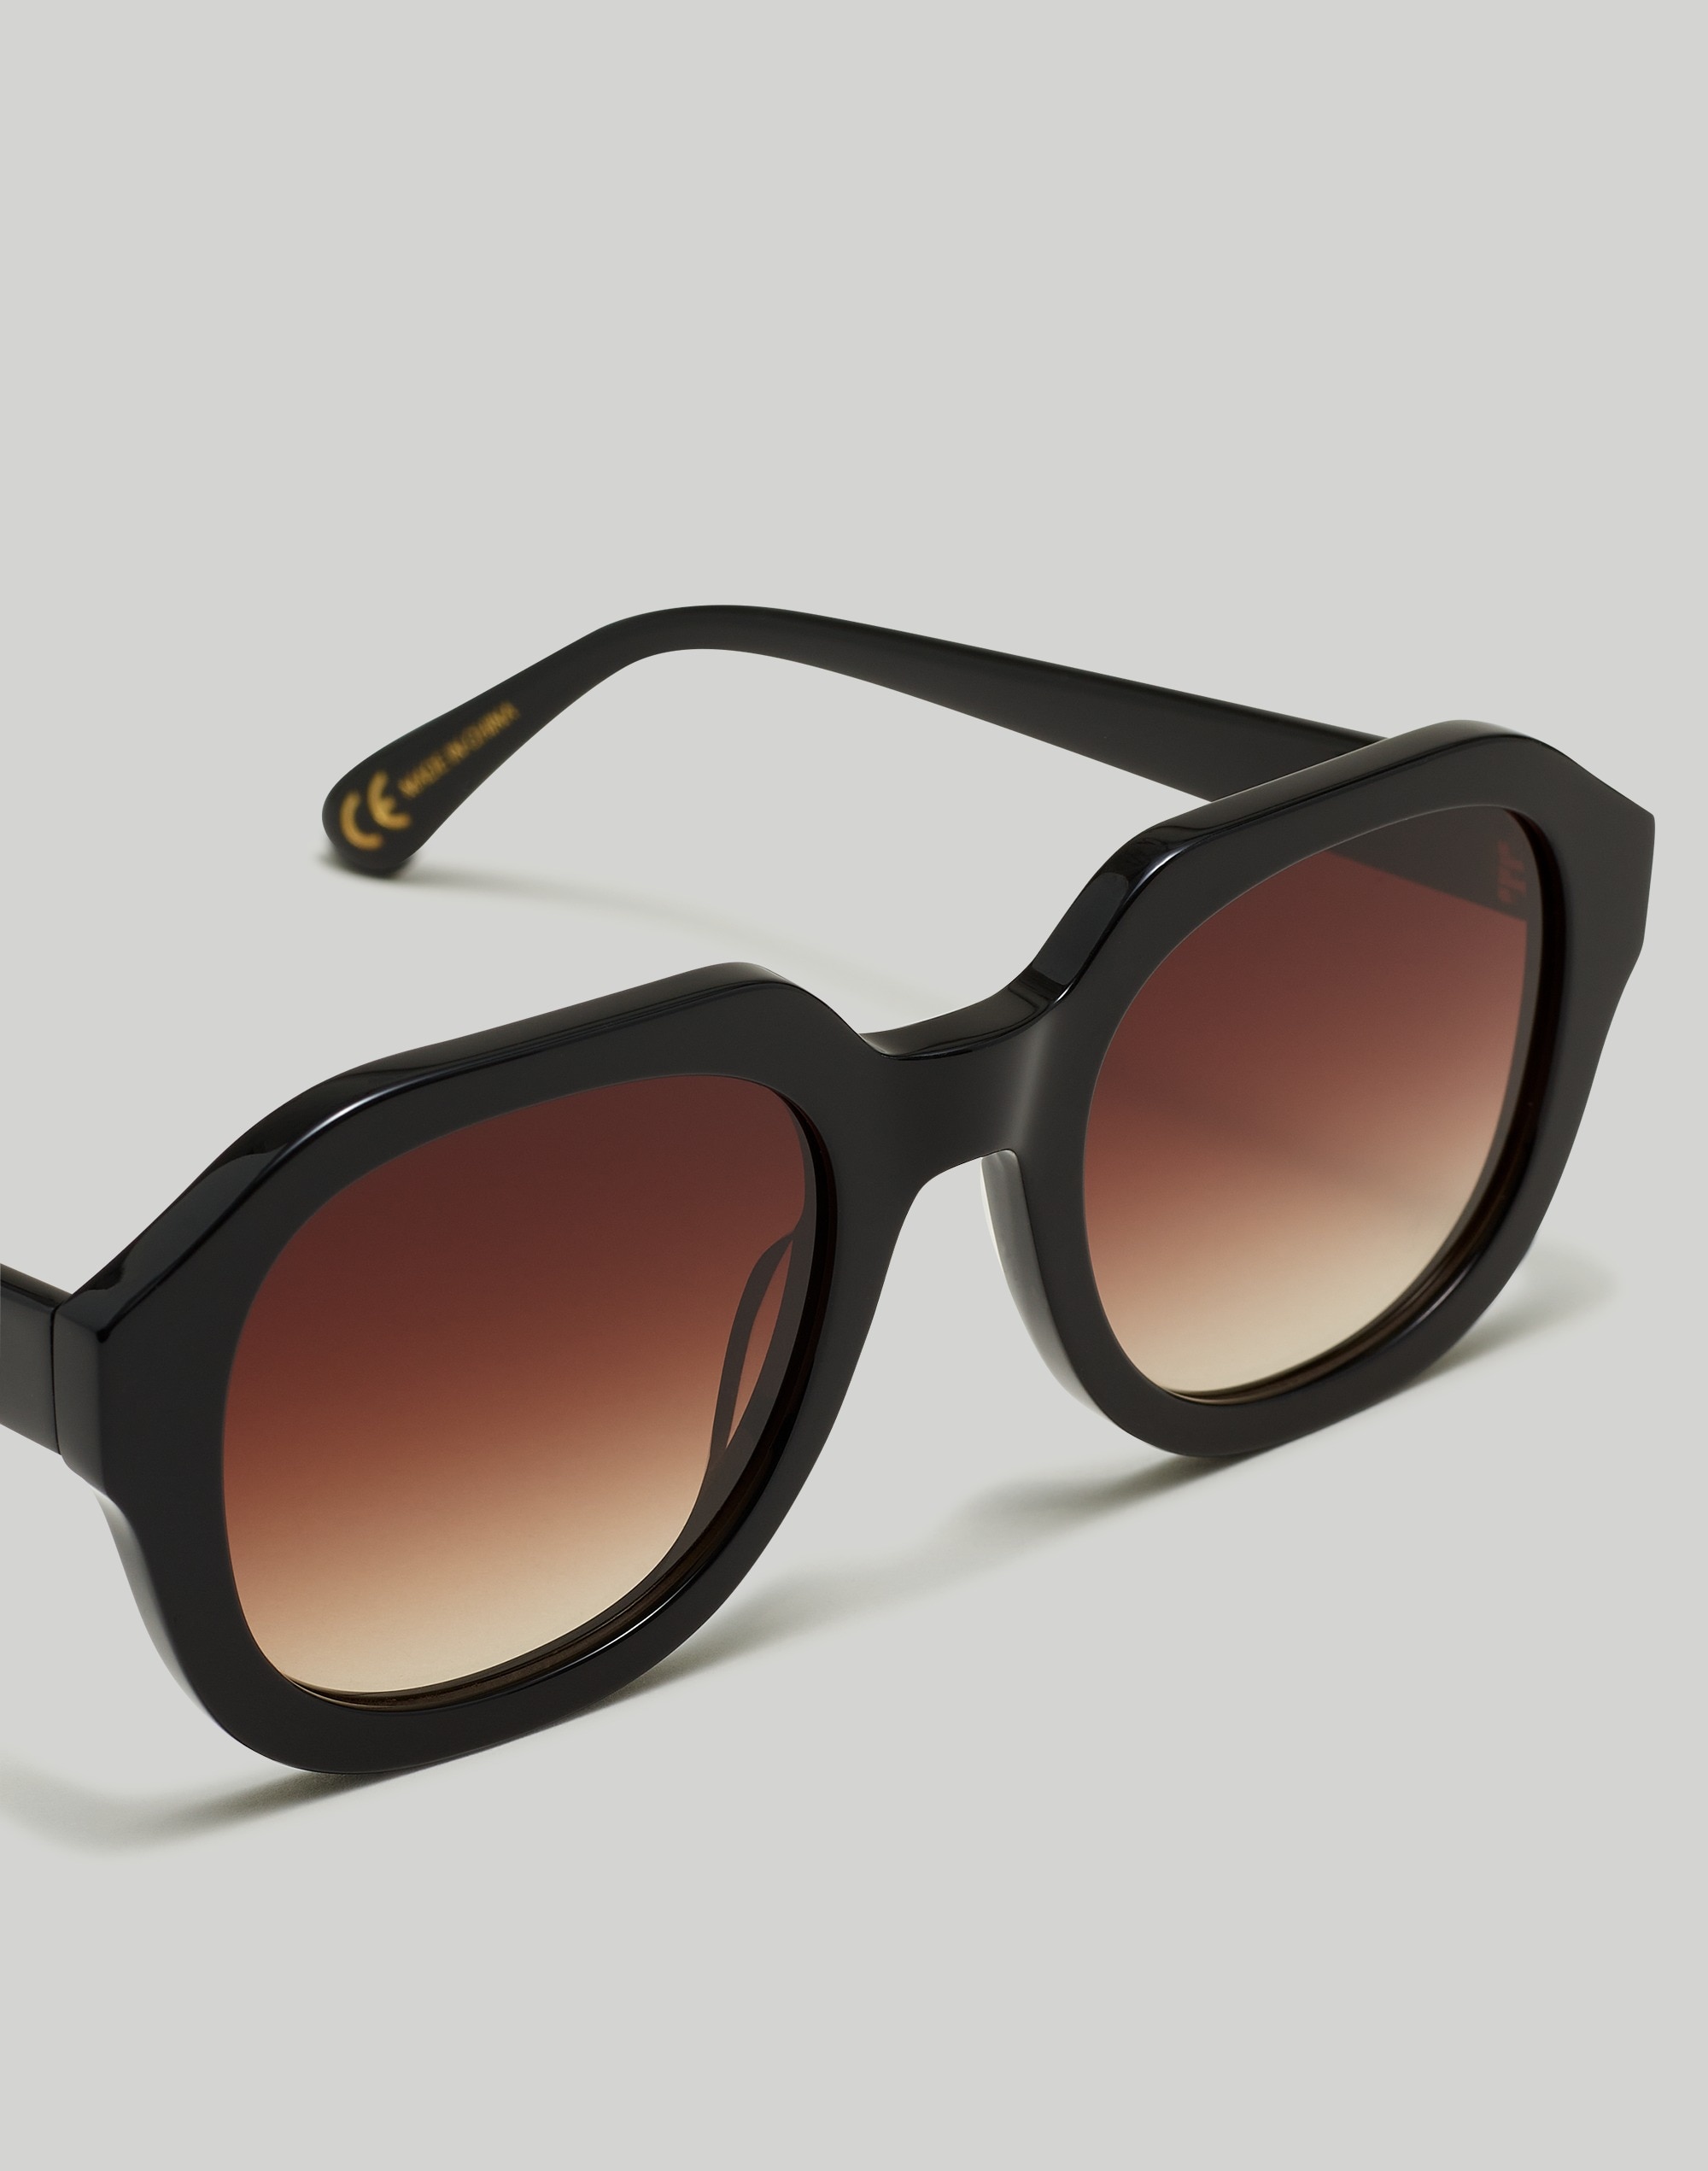 Shop Mw Ralston Sunglasses In True Black